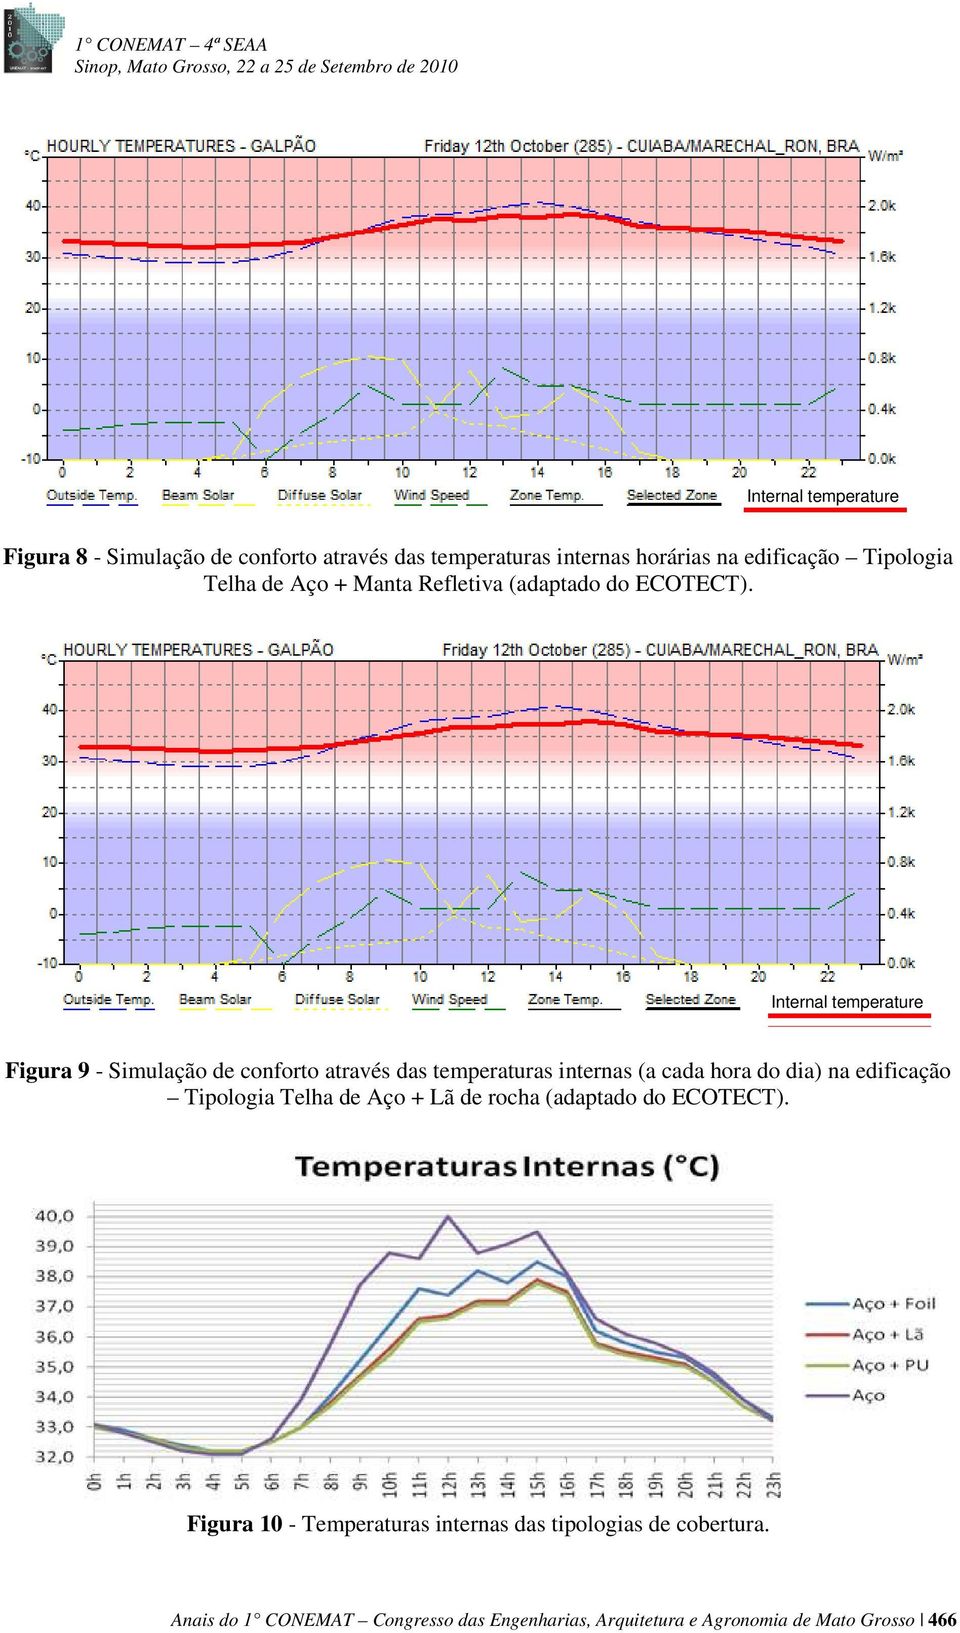 Internal Internal temperature temperature Figura 9 - Simulação de conforto através das temperaturas internas (a cada hora do dia) na